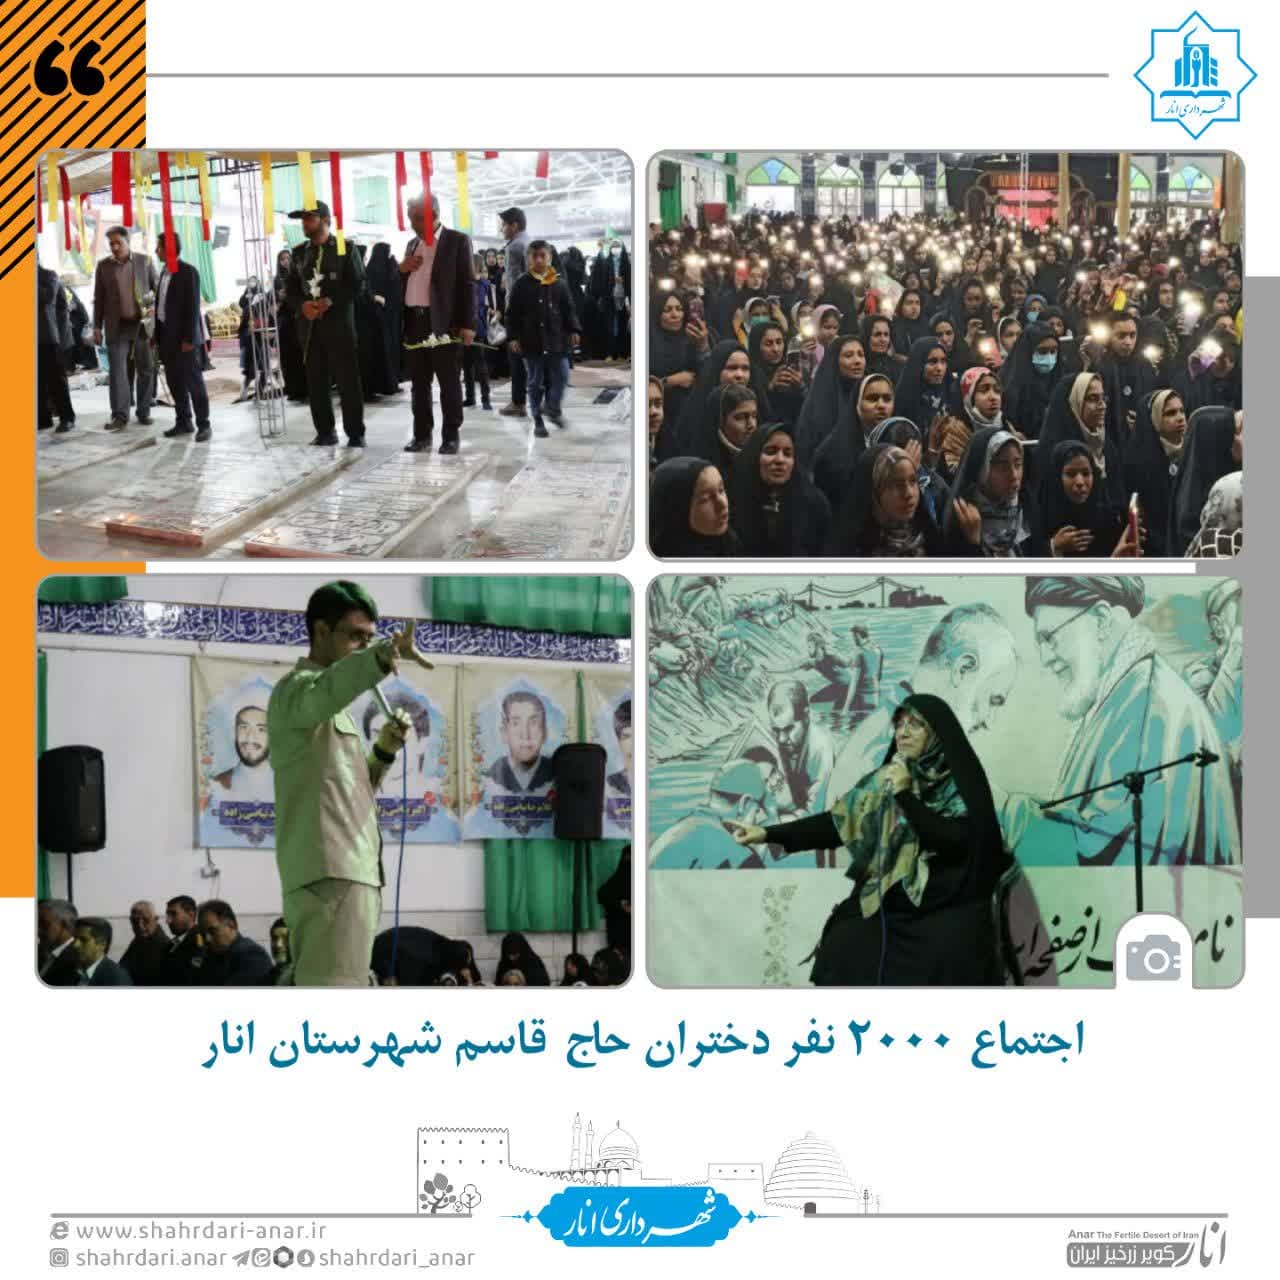 اجتماع ۲۰۰۰ نفر دختران حاج قاسم شهرستان انار برگزار شد.